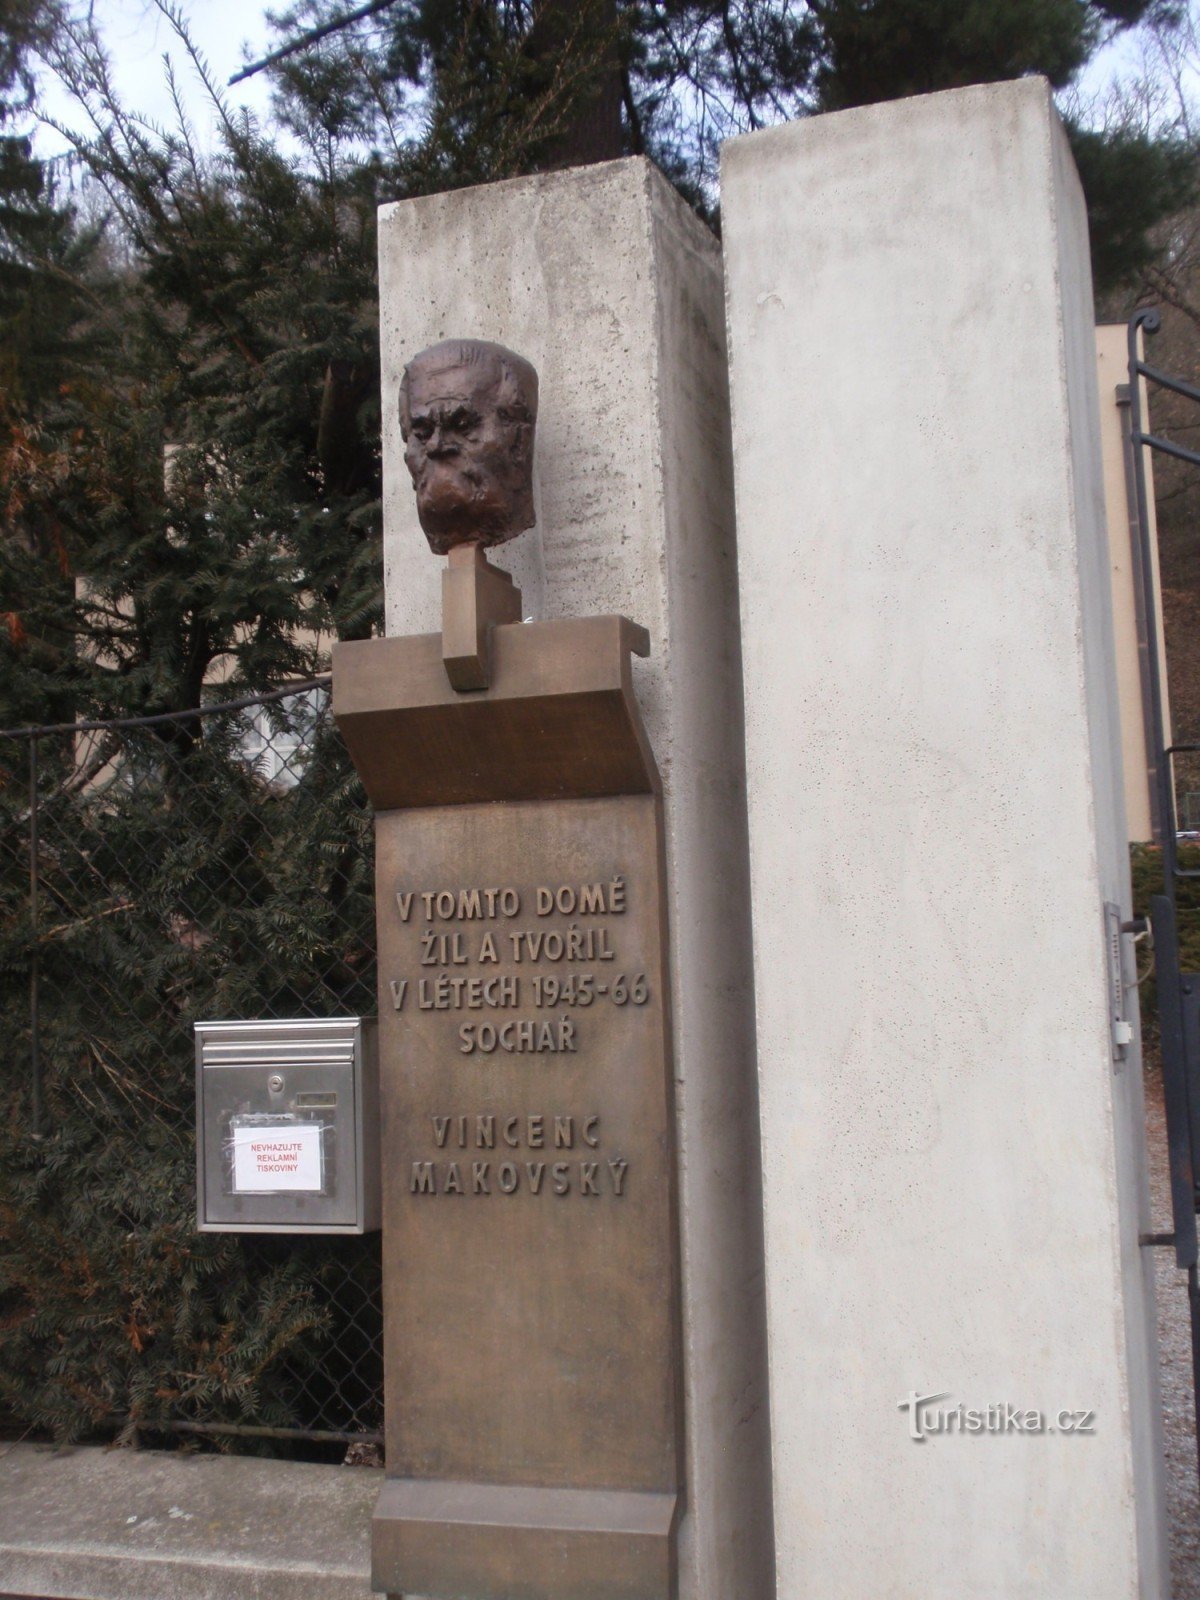 House of Vincenzo Makovský - commemorative plaque